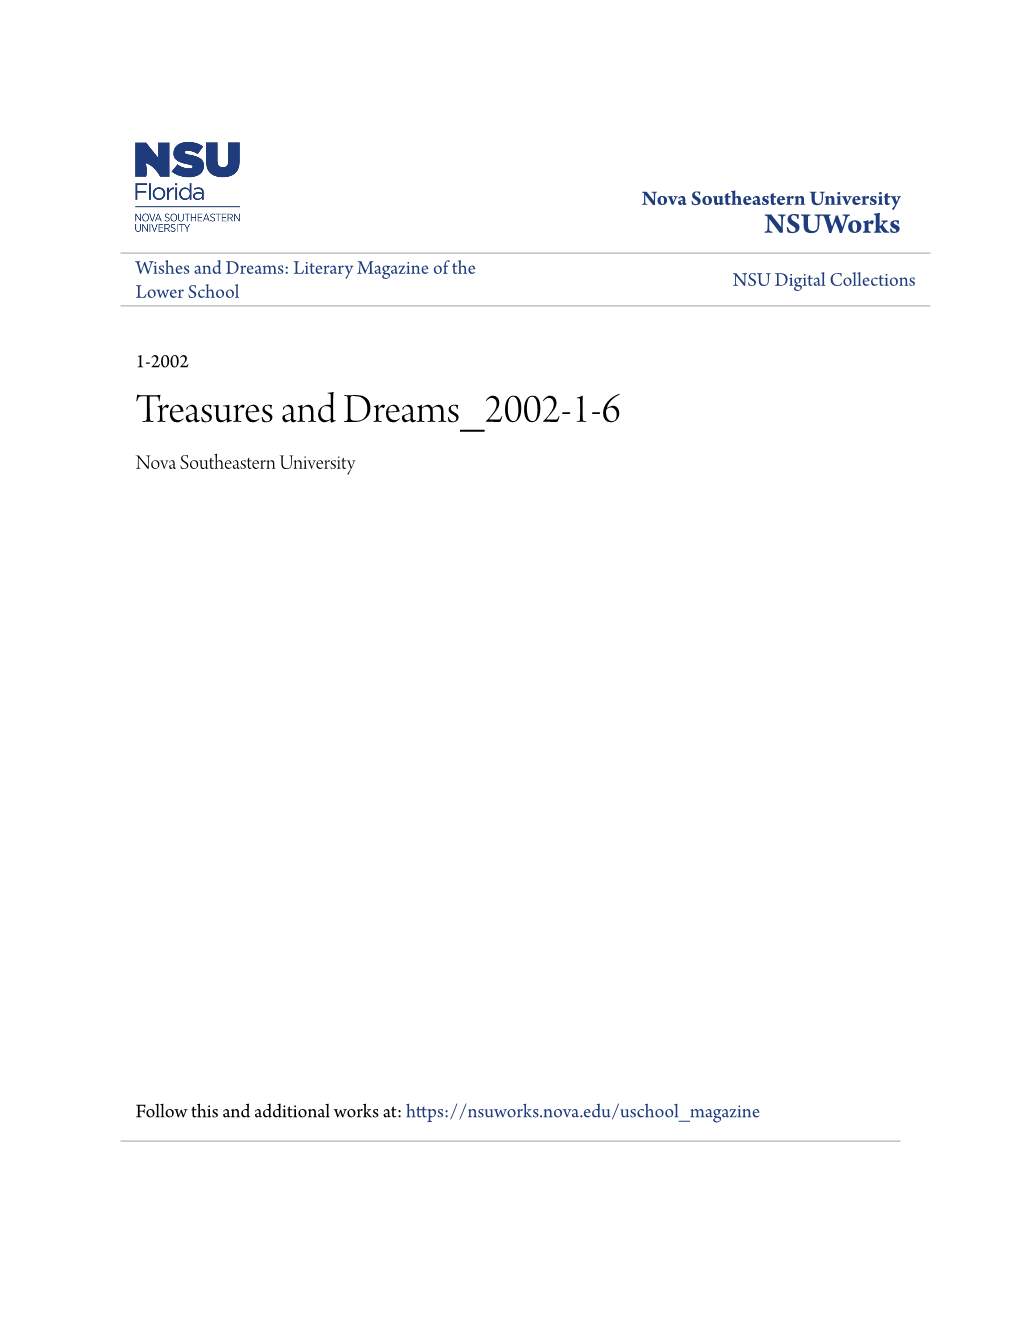 Treasures and Dreams 2002-1-6 Nova Southeastern University